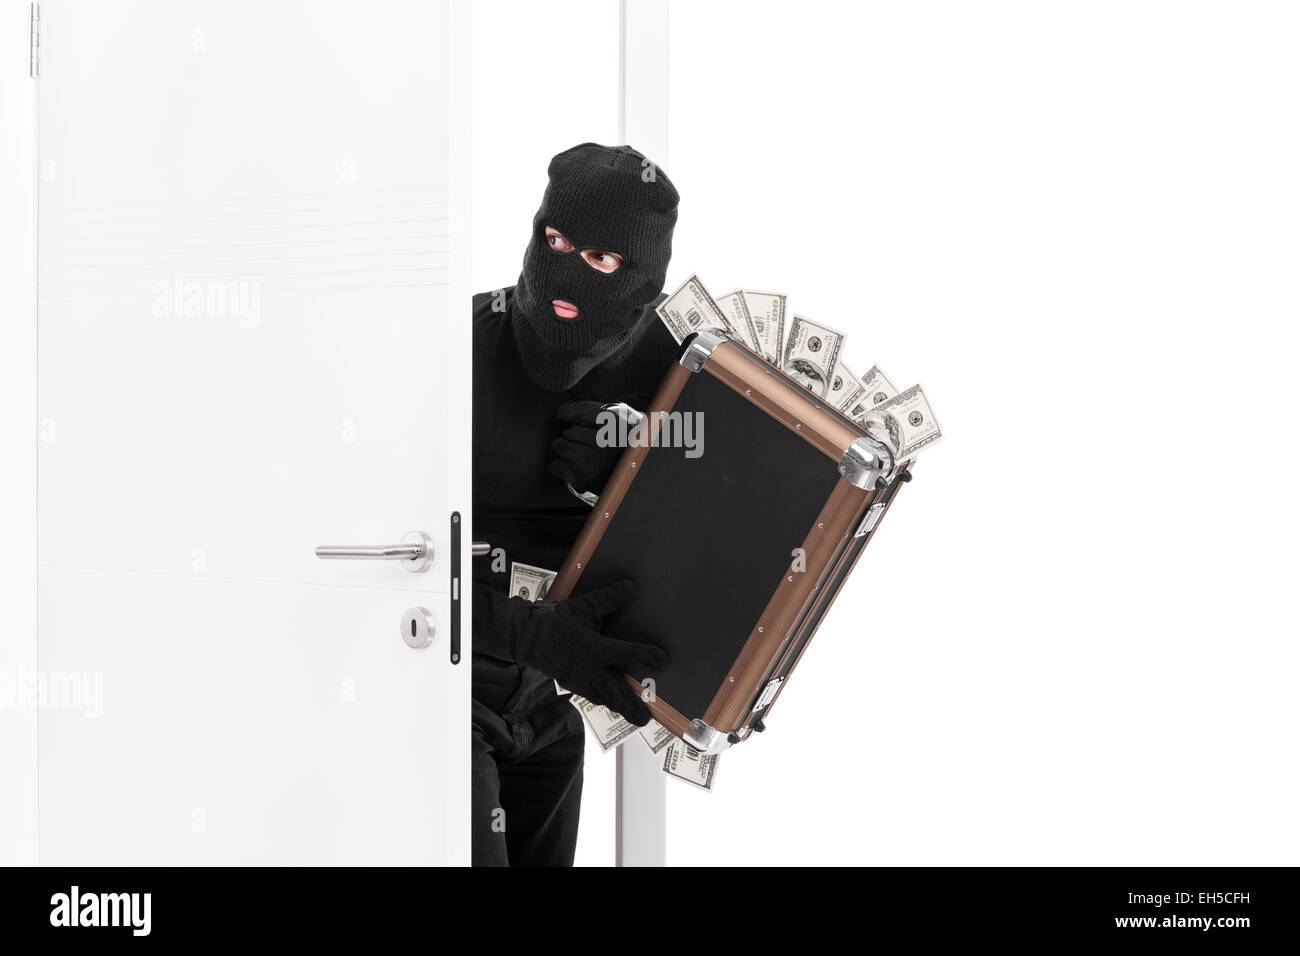 Ladro con una borsa piena di denaro entrando in una stanza isolata su sfondo bianco Foto Stock